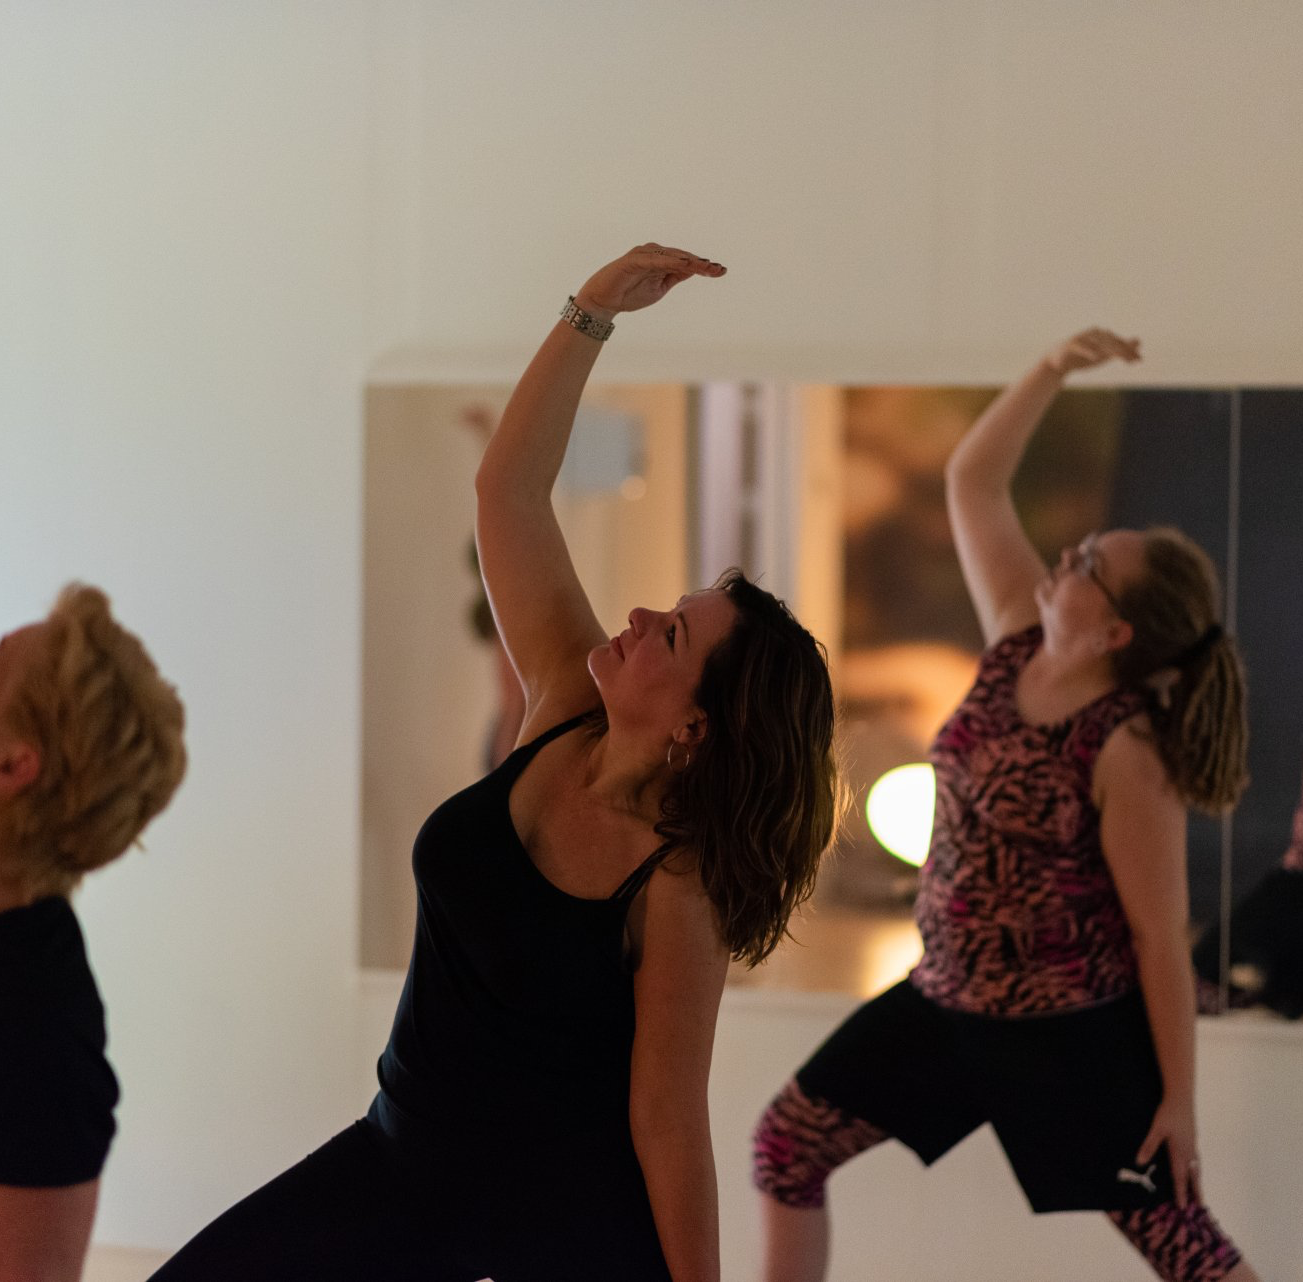 Drie vrouwen beoefenen yoga voor een spiegel